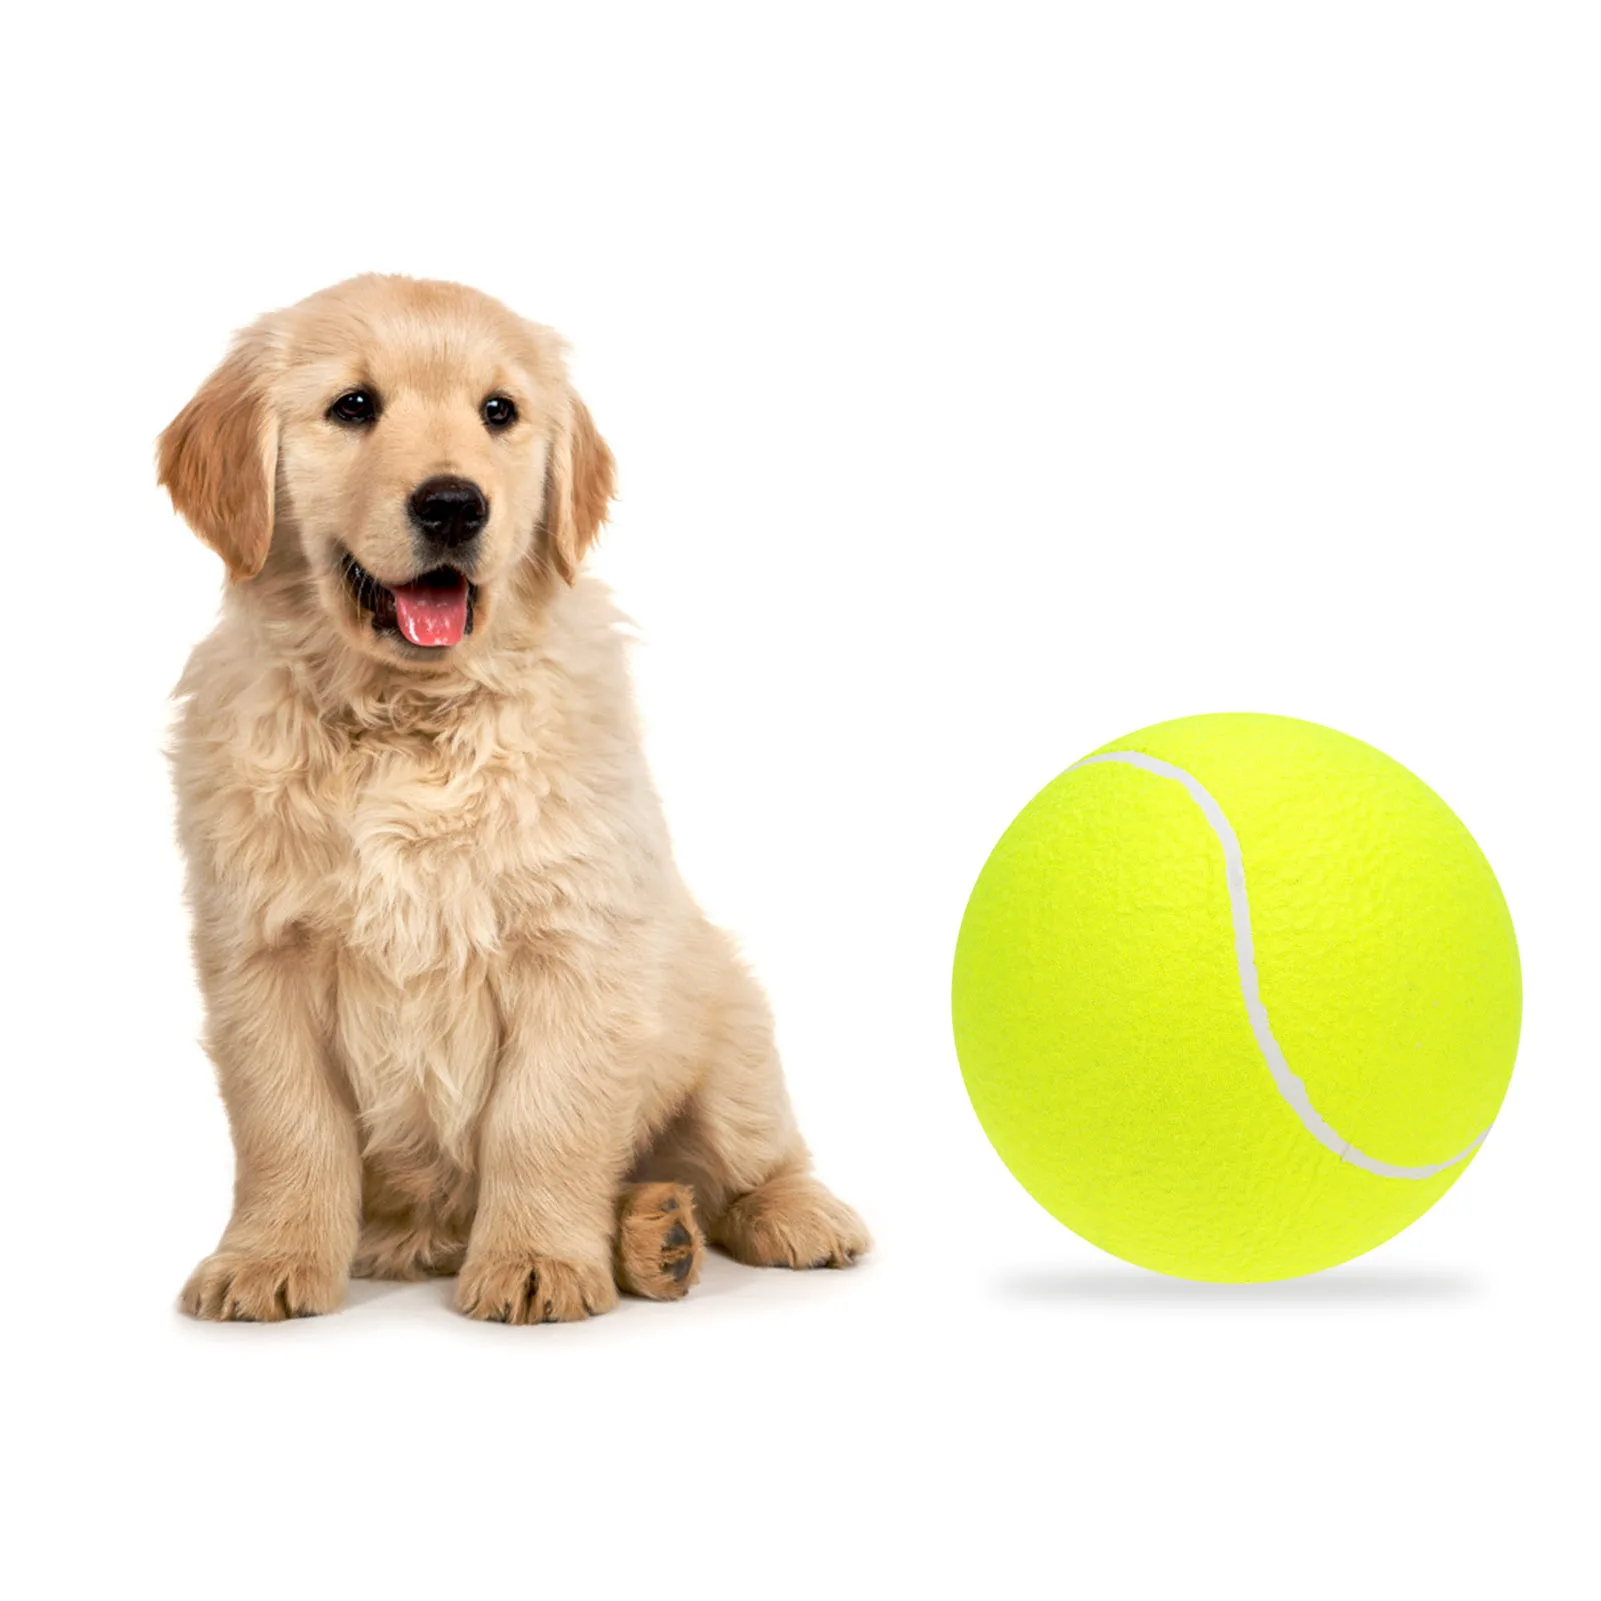 

Гигантский Теннисный мяч для домашних животных, жевательная игрушка, большой надувной Теннисный мяч, подпись Mega Jumbo, строительные принадлеж...